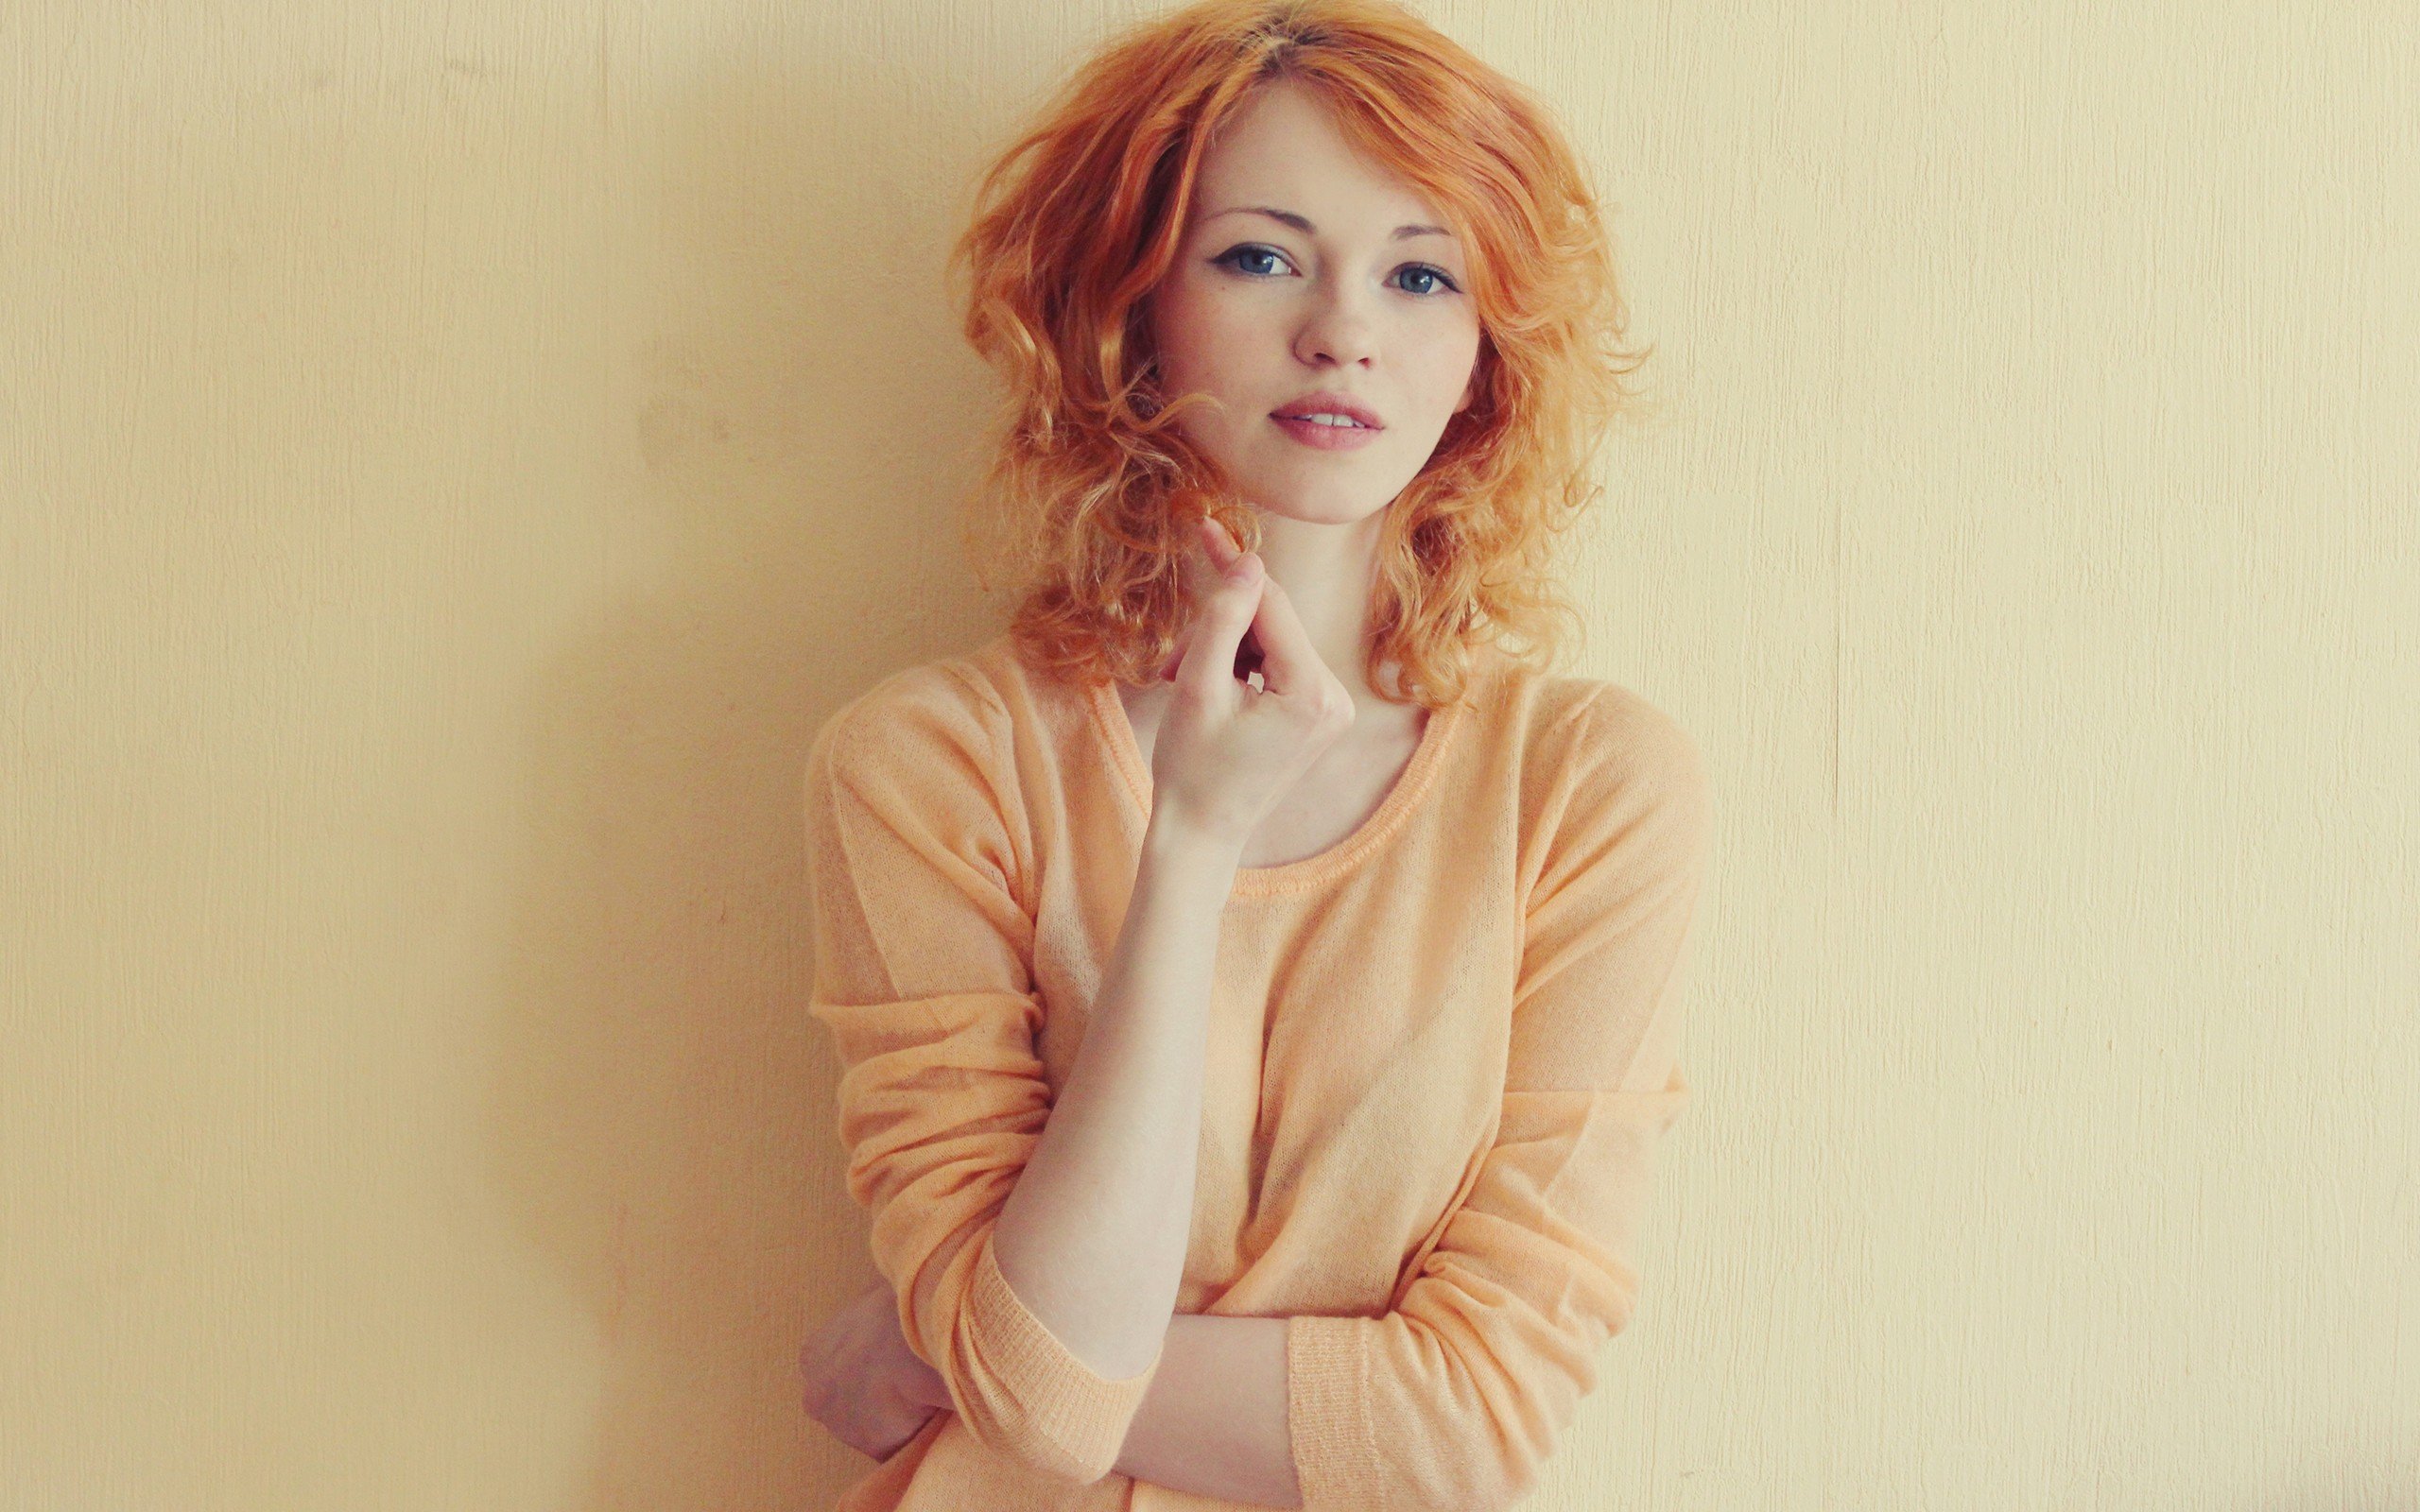 redhead, Model, Woman, Beauty, Beautiful, Girl, Lovely, Sweet, Cute Wallpaper